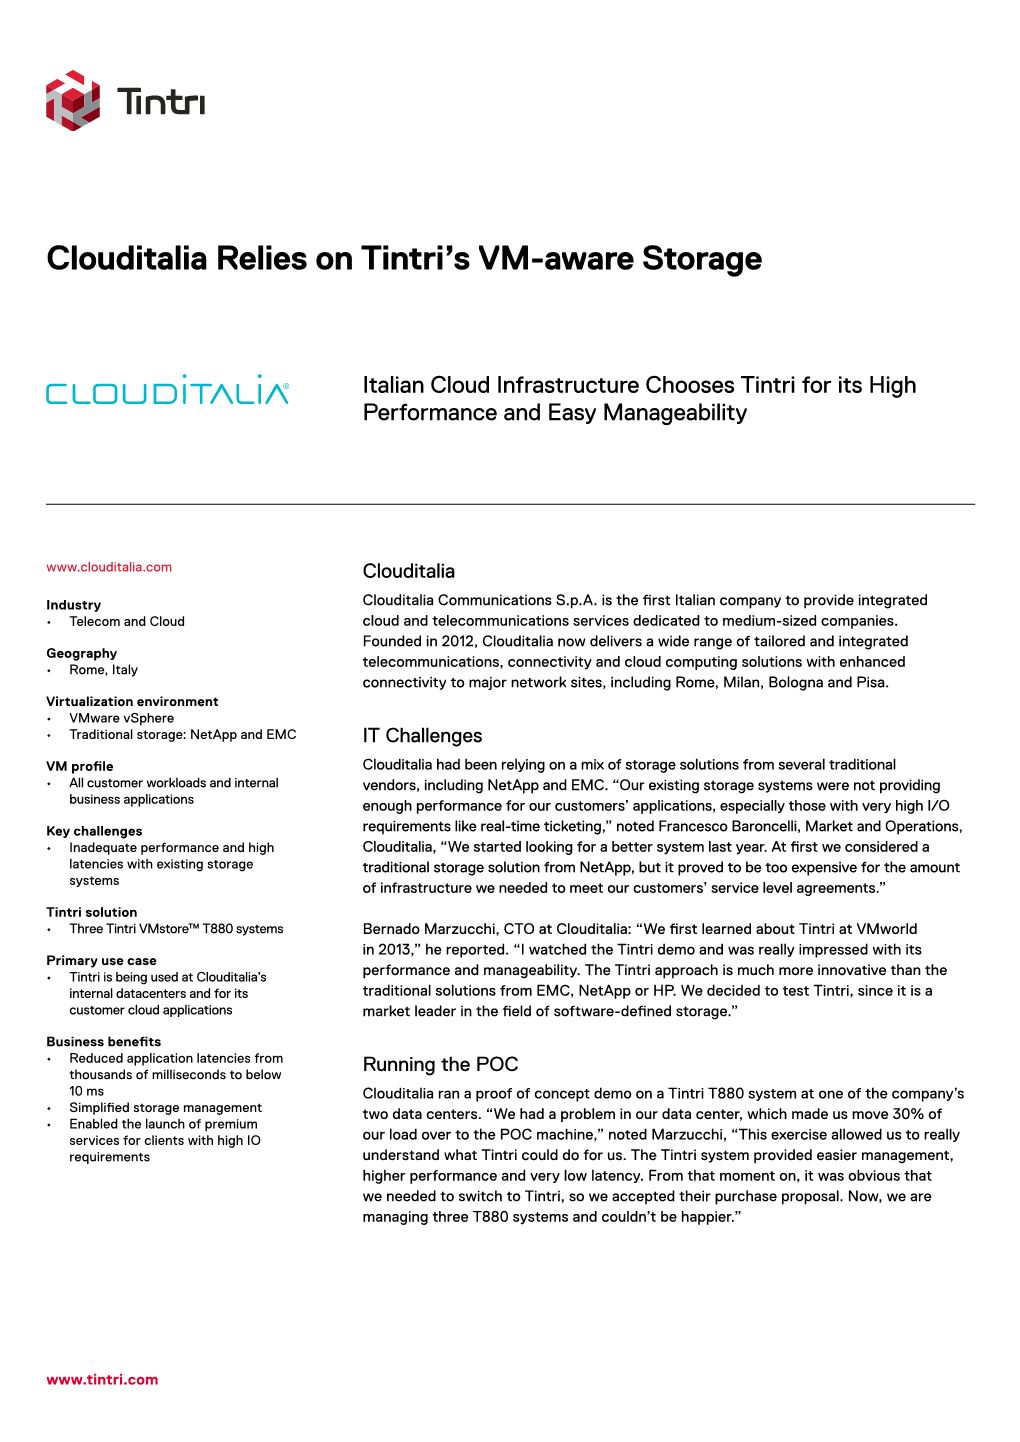 Clouditalia Relies on Tintri's VM-Aware Storage